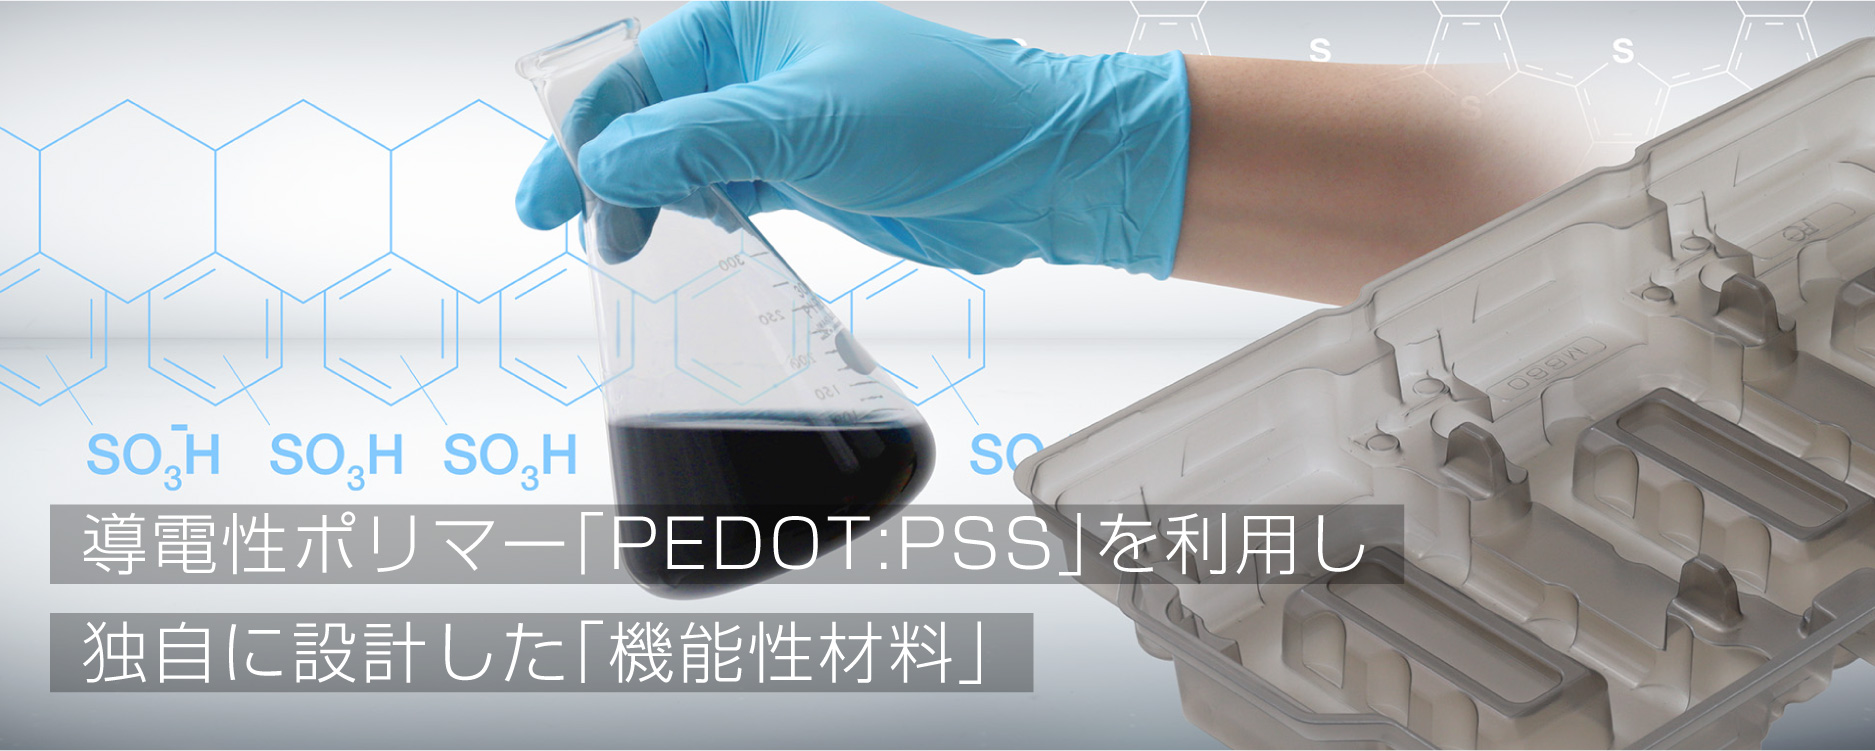 導電性ポリマー「PEDOT:PSS」を利用し独自に設計した「機能性材料」